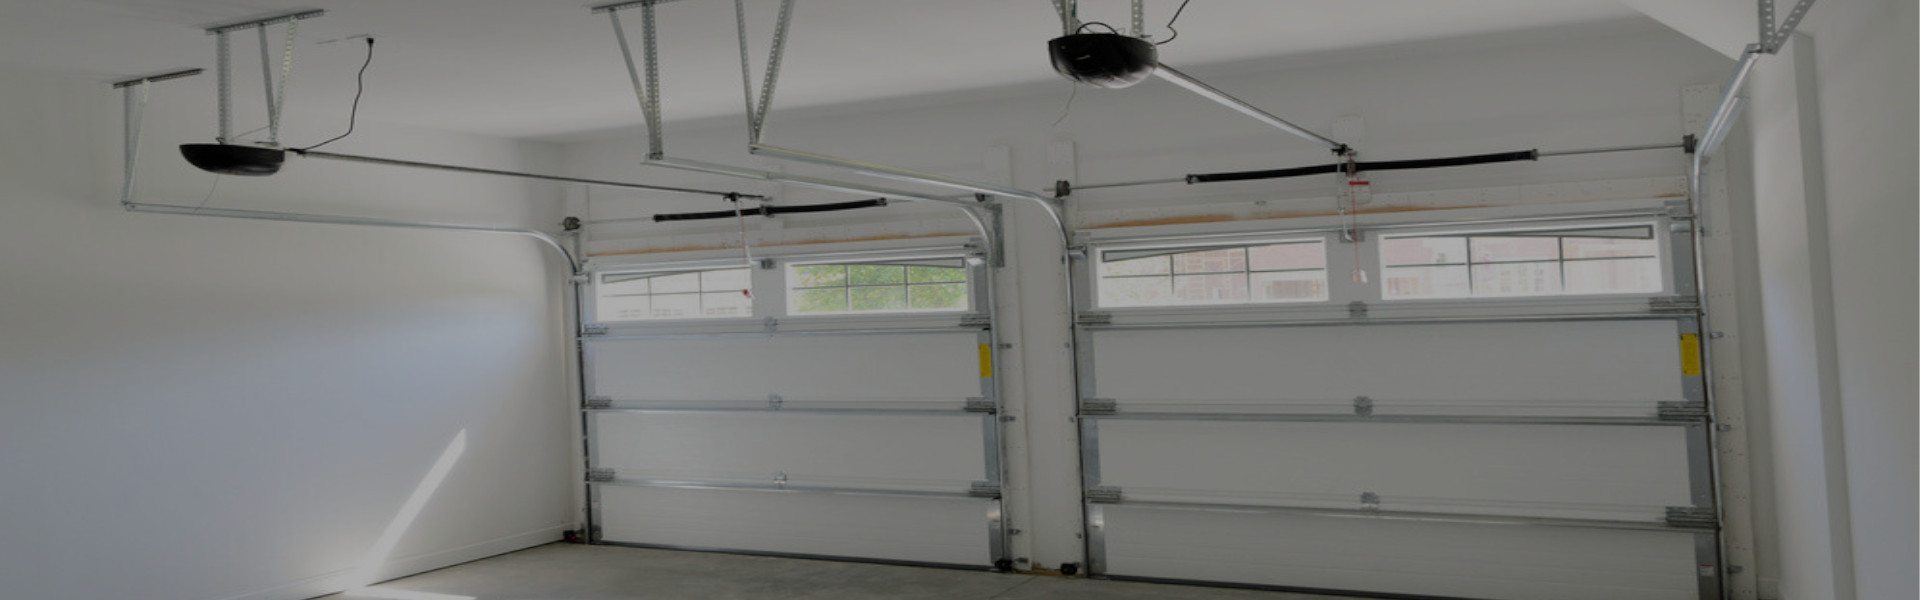 Slider Garage Door Repair, Glaziers in Loughton, High Beach, IG10